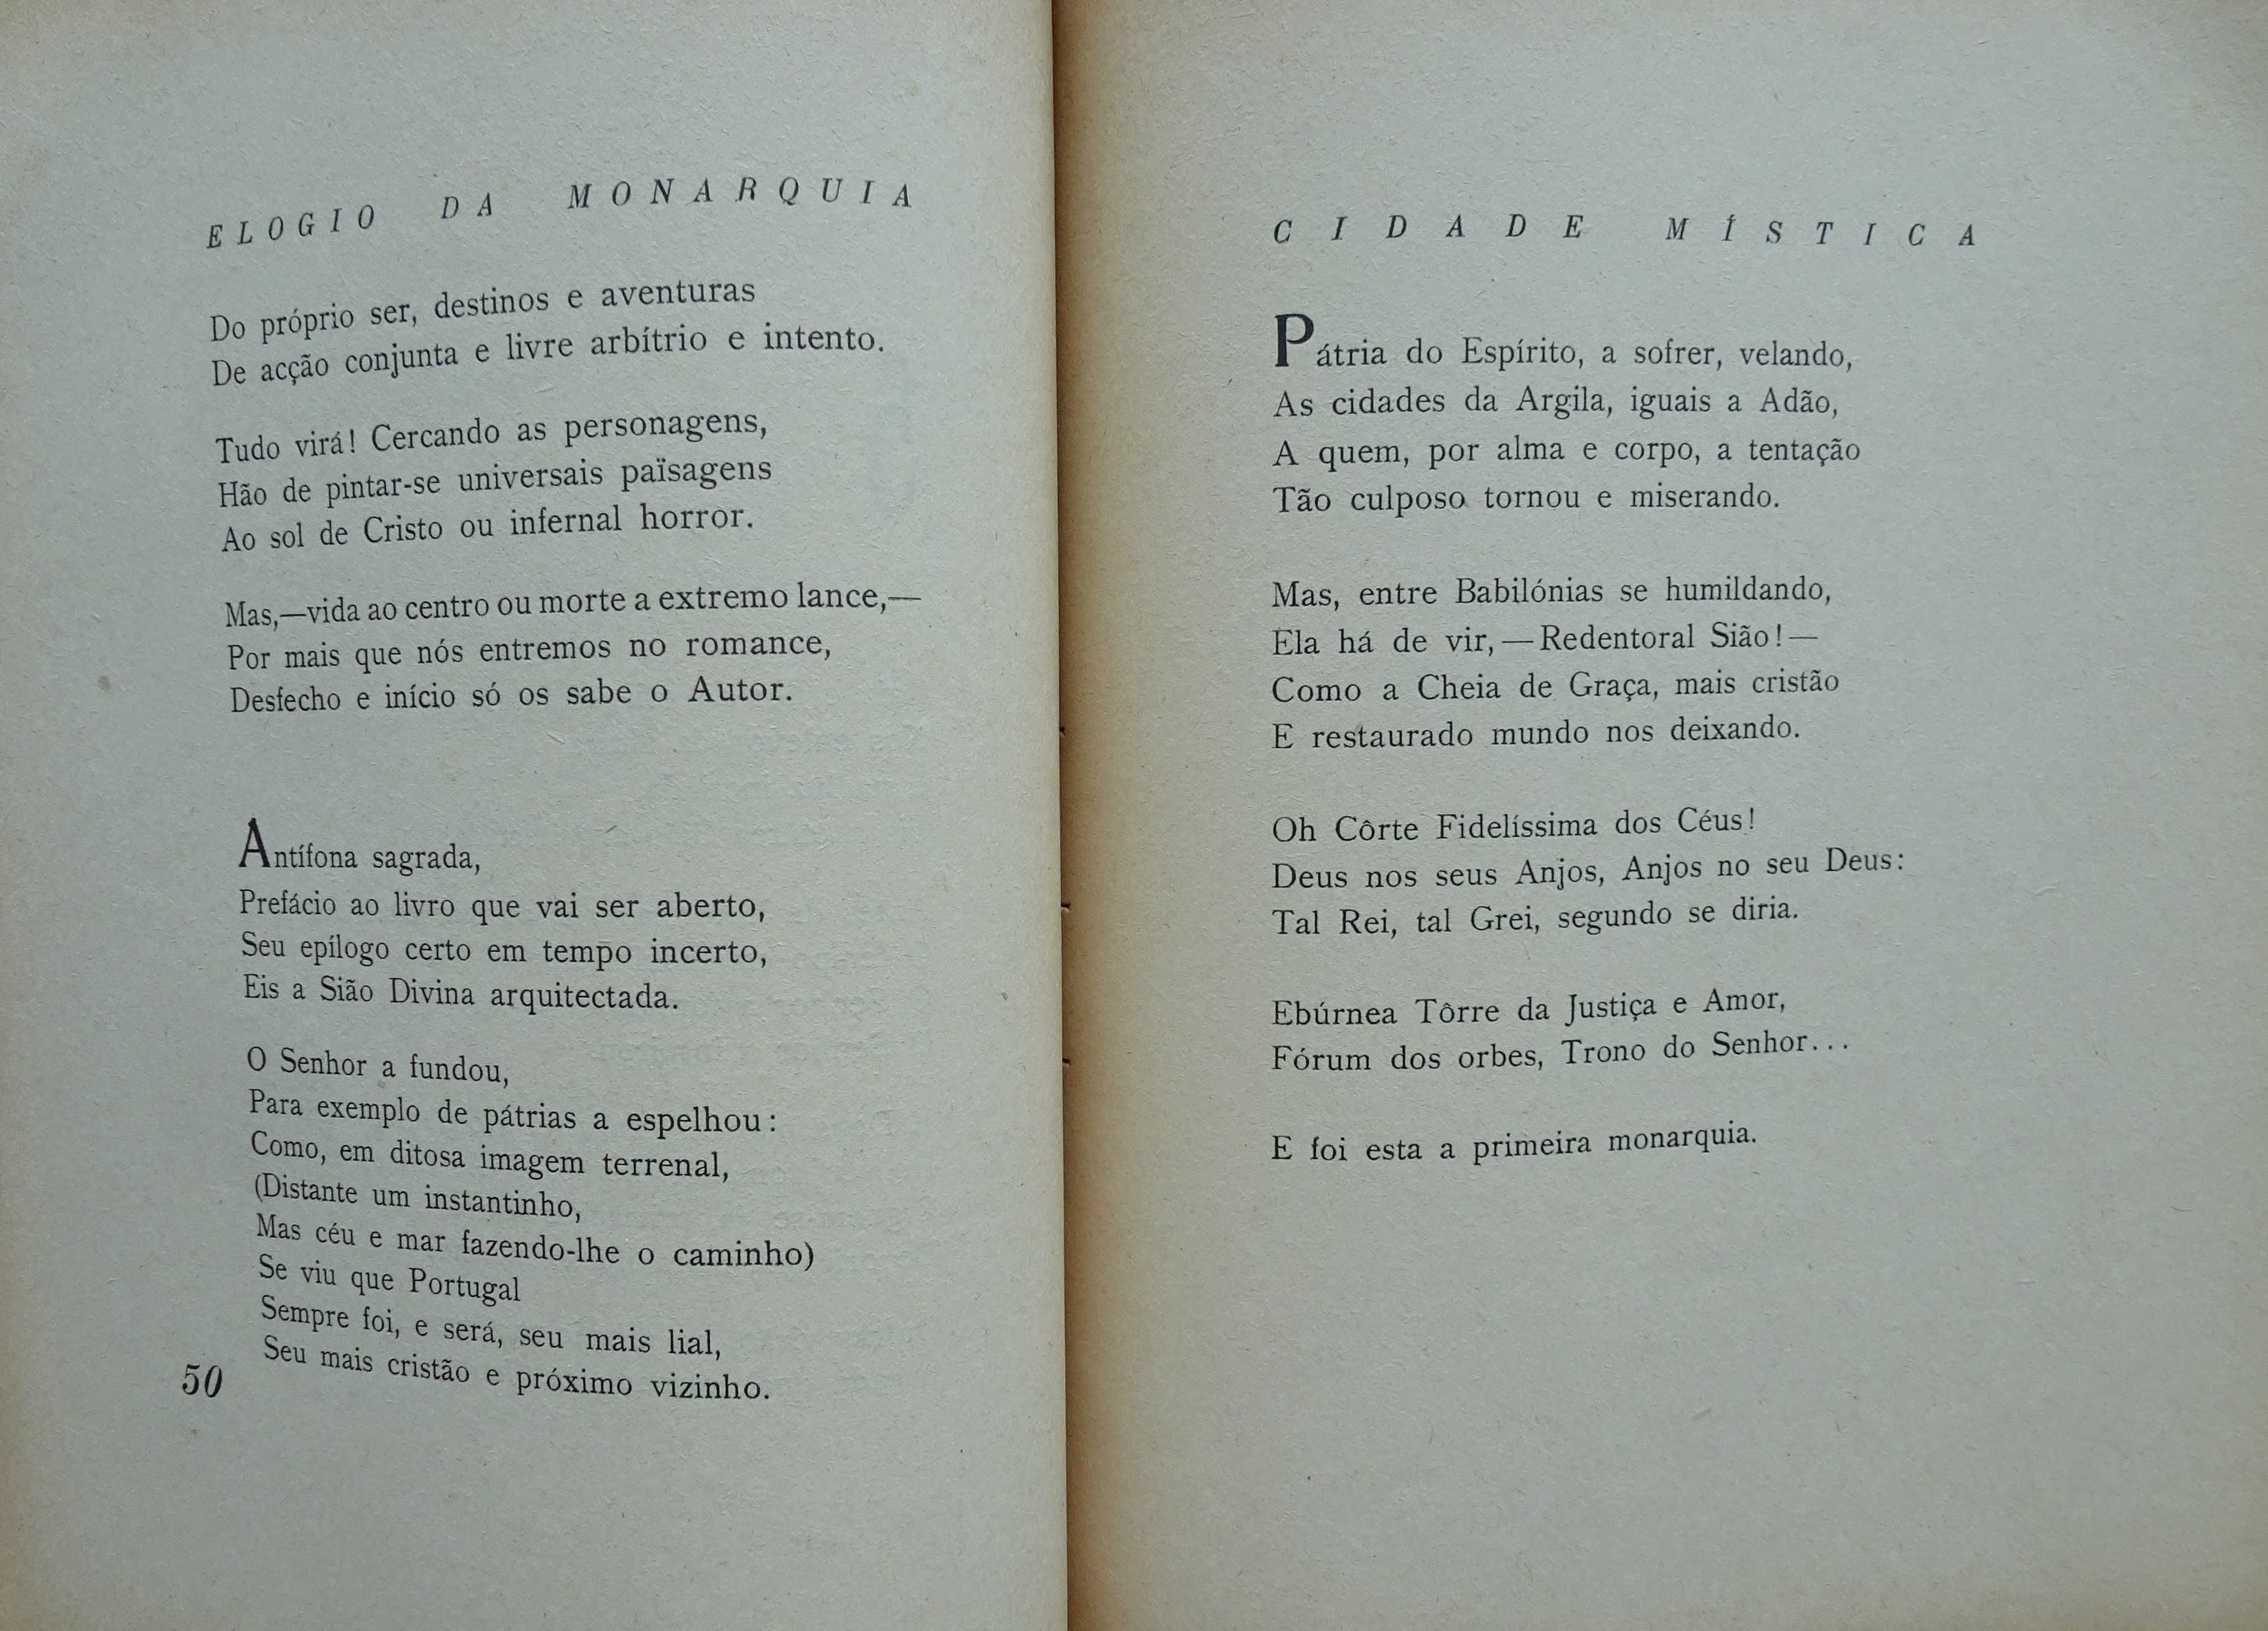 Elogio da Monarquia de António Corrêa D´Oliveira - 1ª Edição 1944